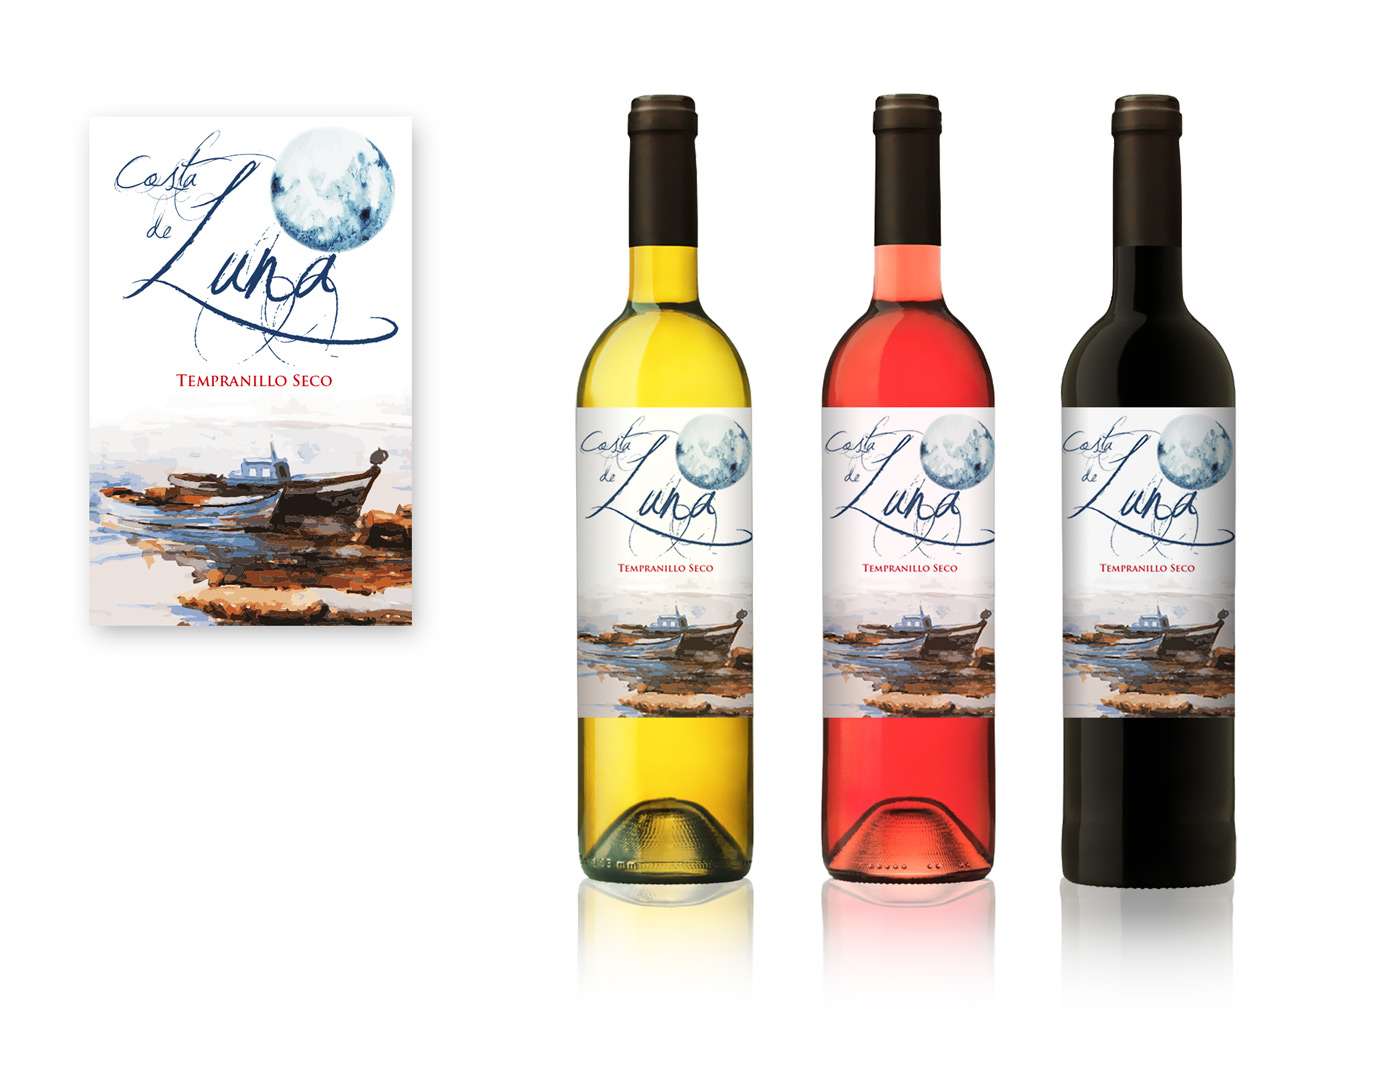 Diseño gráfico y creativo de etiquetas y packaging de vino para COSTA DE LUNA